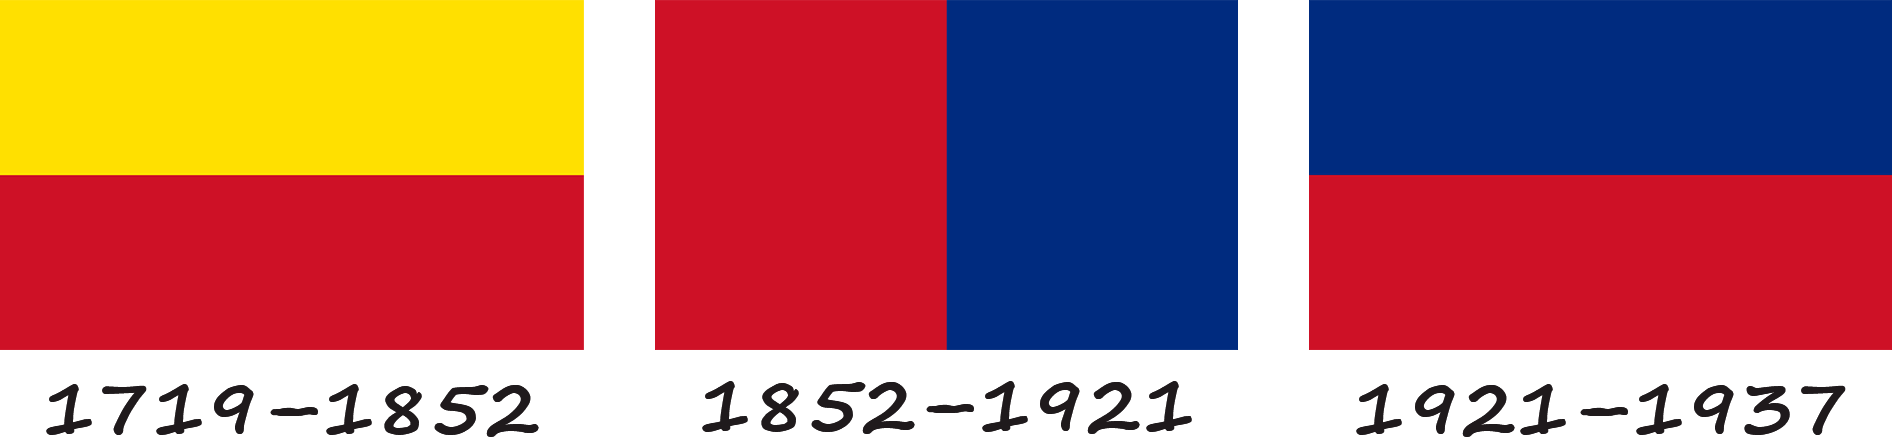 History of the Liechtenstein flag